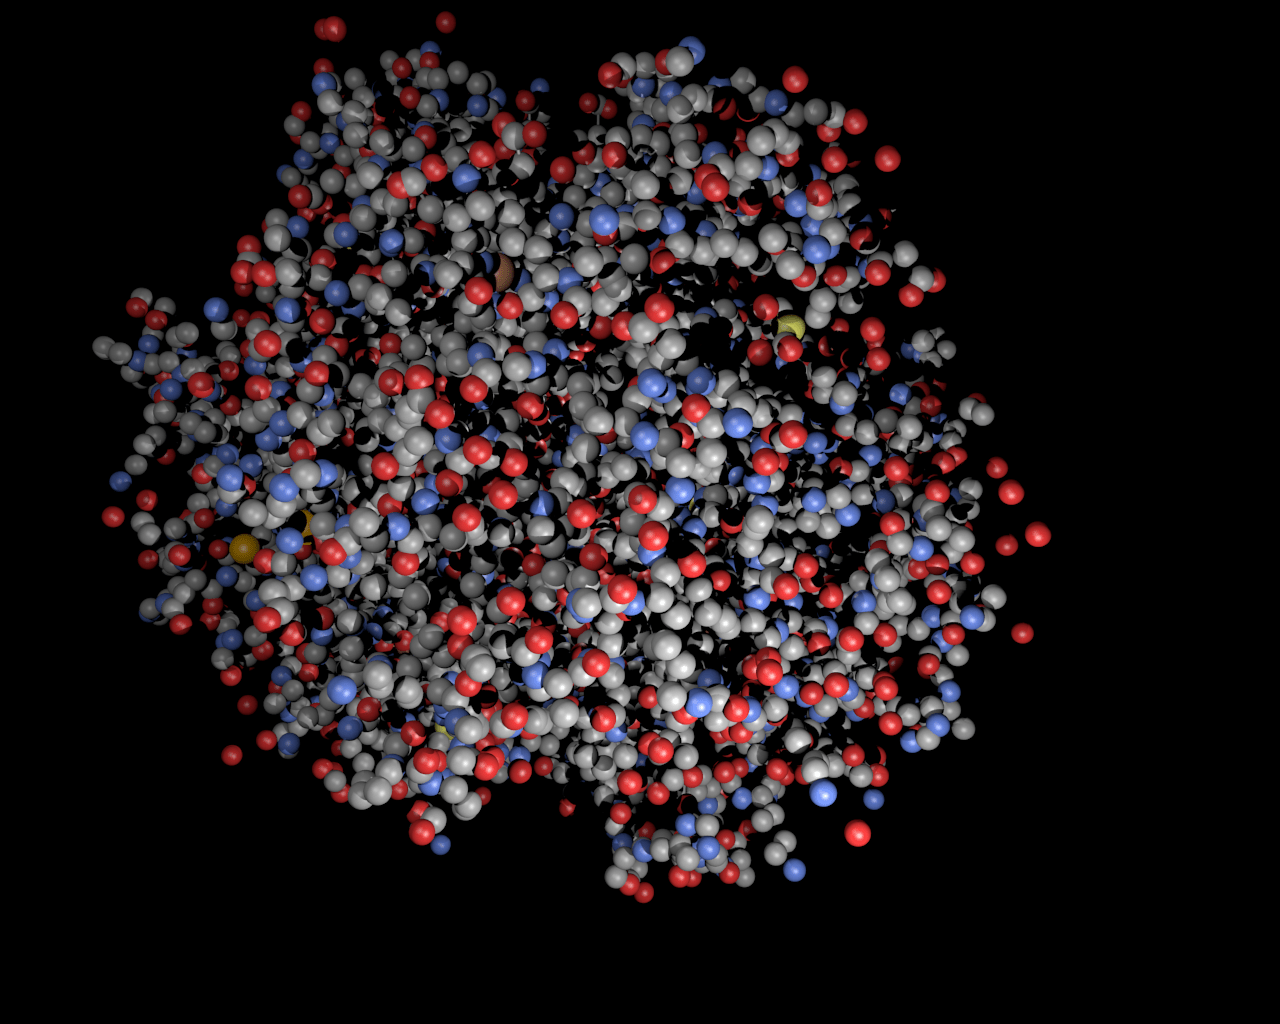  Blender Hintergrundbild 1280x1024. Visualisierung von Proteinen mit Blender [ Wallpaper Hämoglobin ]